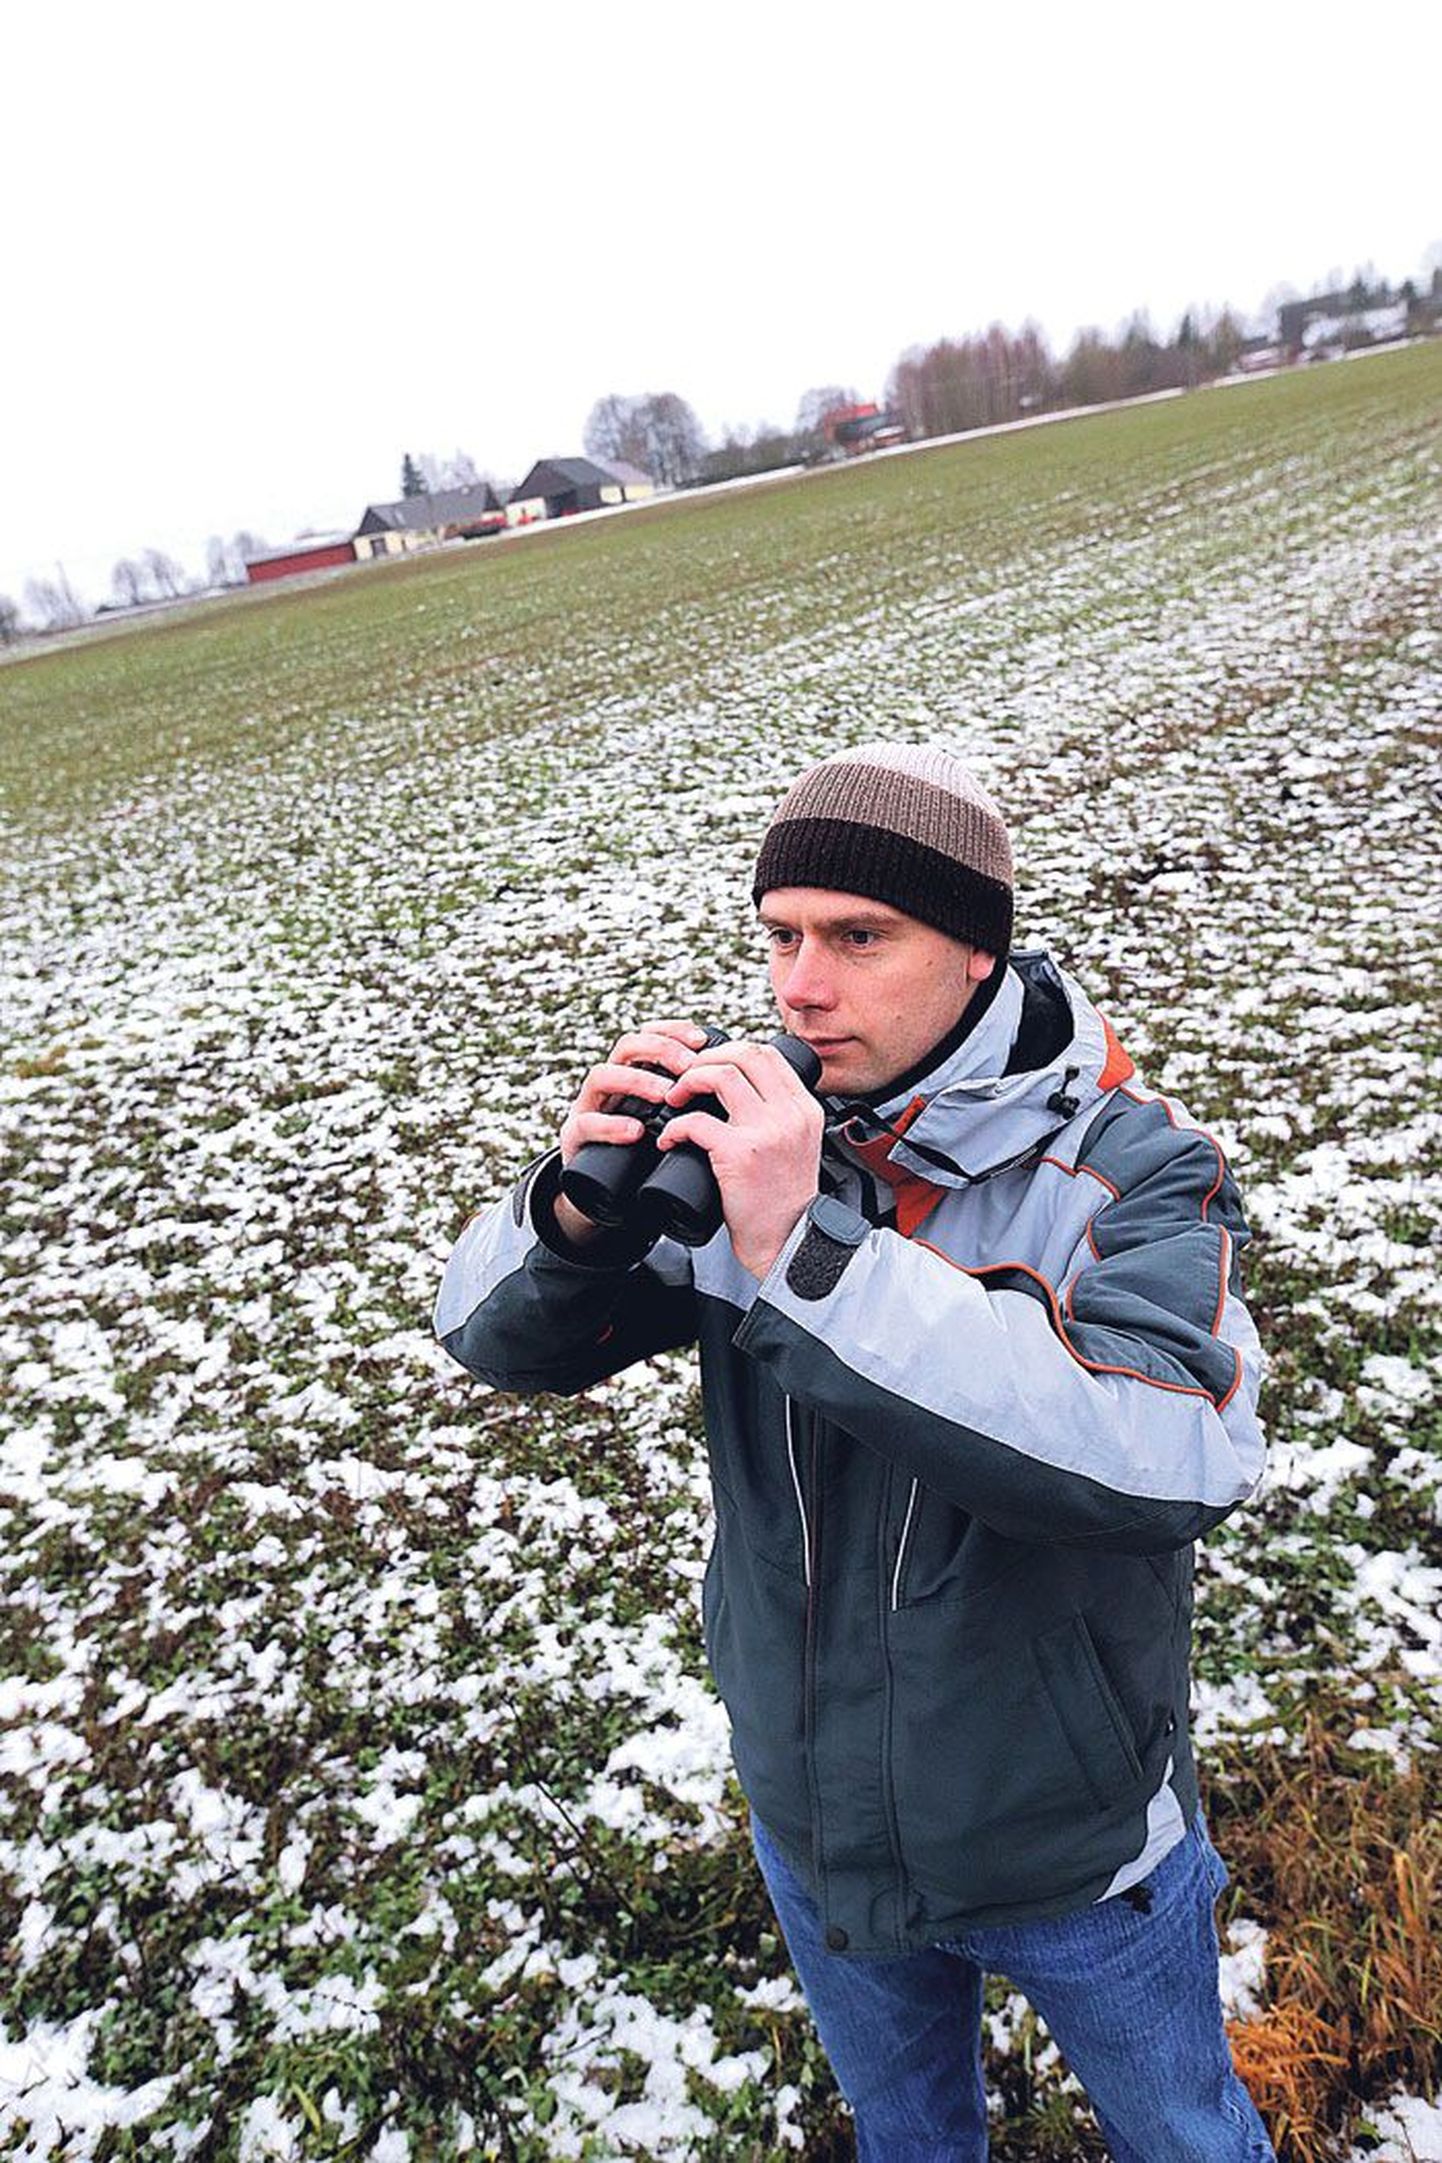 Esmaspäeval kaitses Tartu ülikooli geograaf Riho Marja doktoriväitekirja põllulindude seostest maakasutusega. Juba eile õhtul sõitis ta Saksamaale, et jätkata põllulindude seoste uurimist mahepõllunduse ning keskkonnasäästliku põllupidamisega.